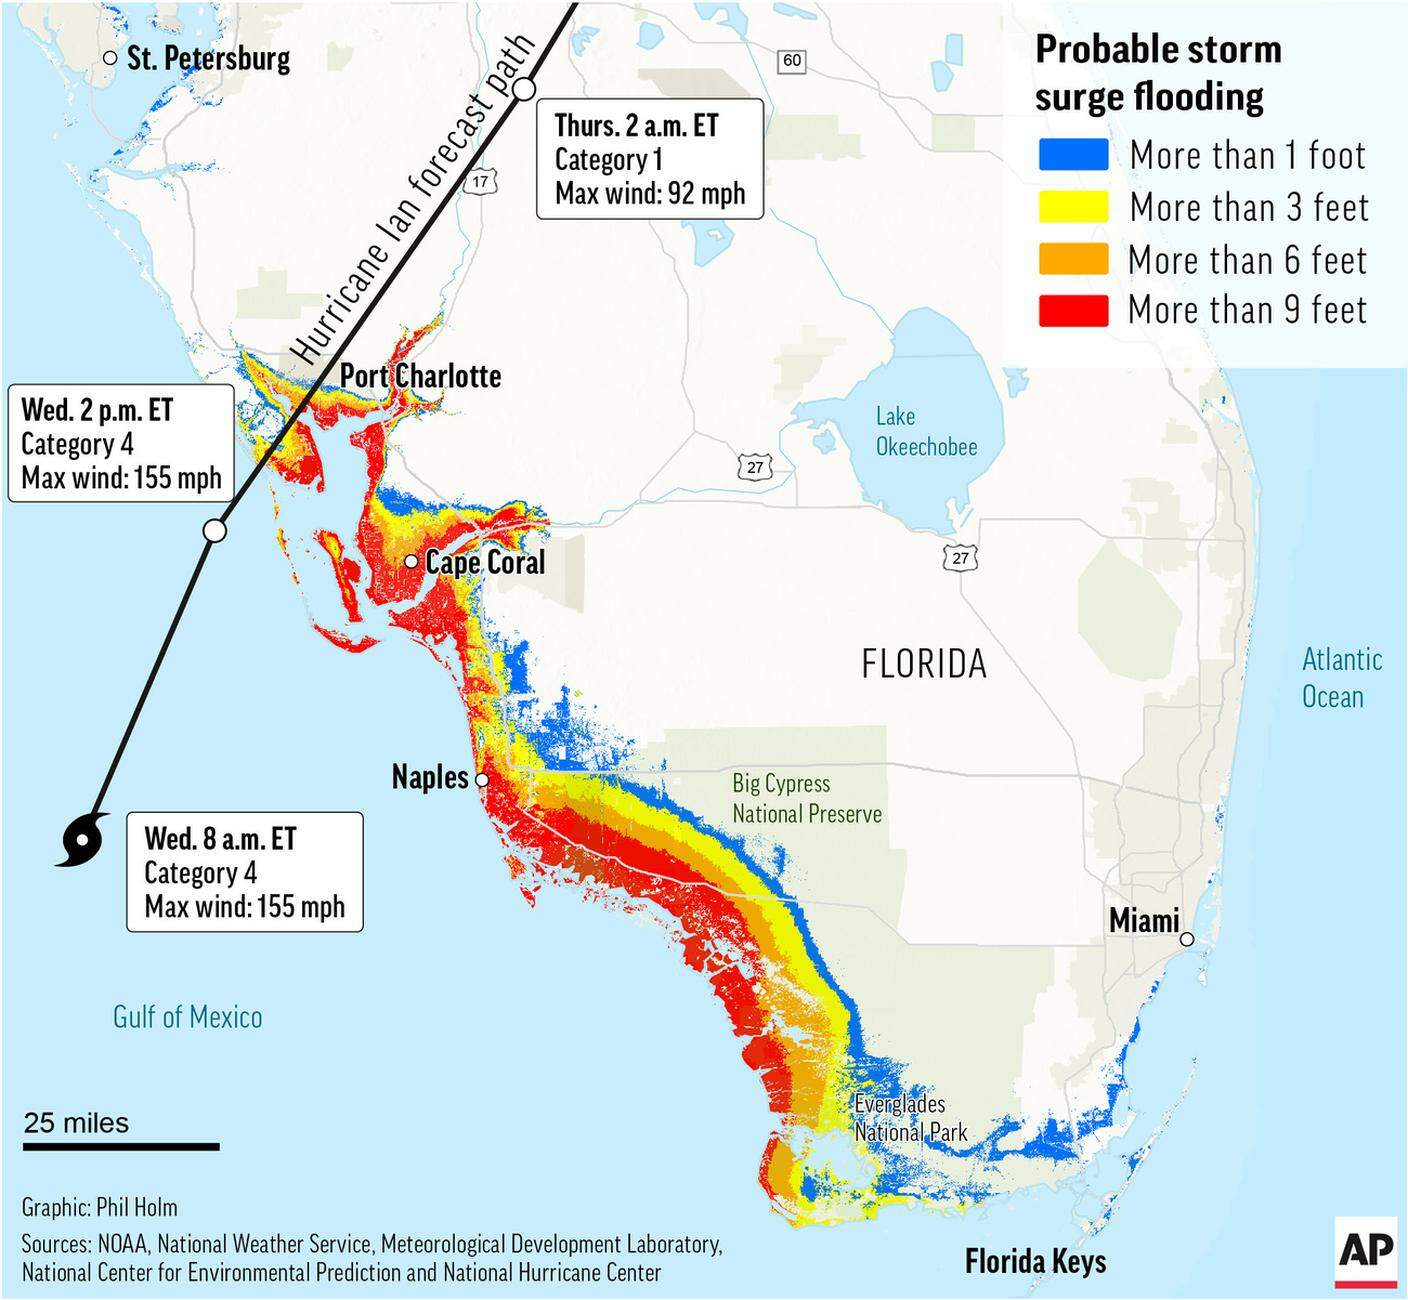 Le aree della Florida minacciate